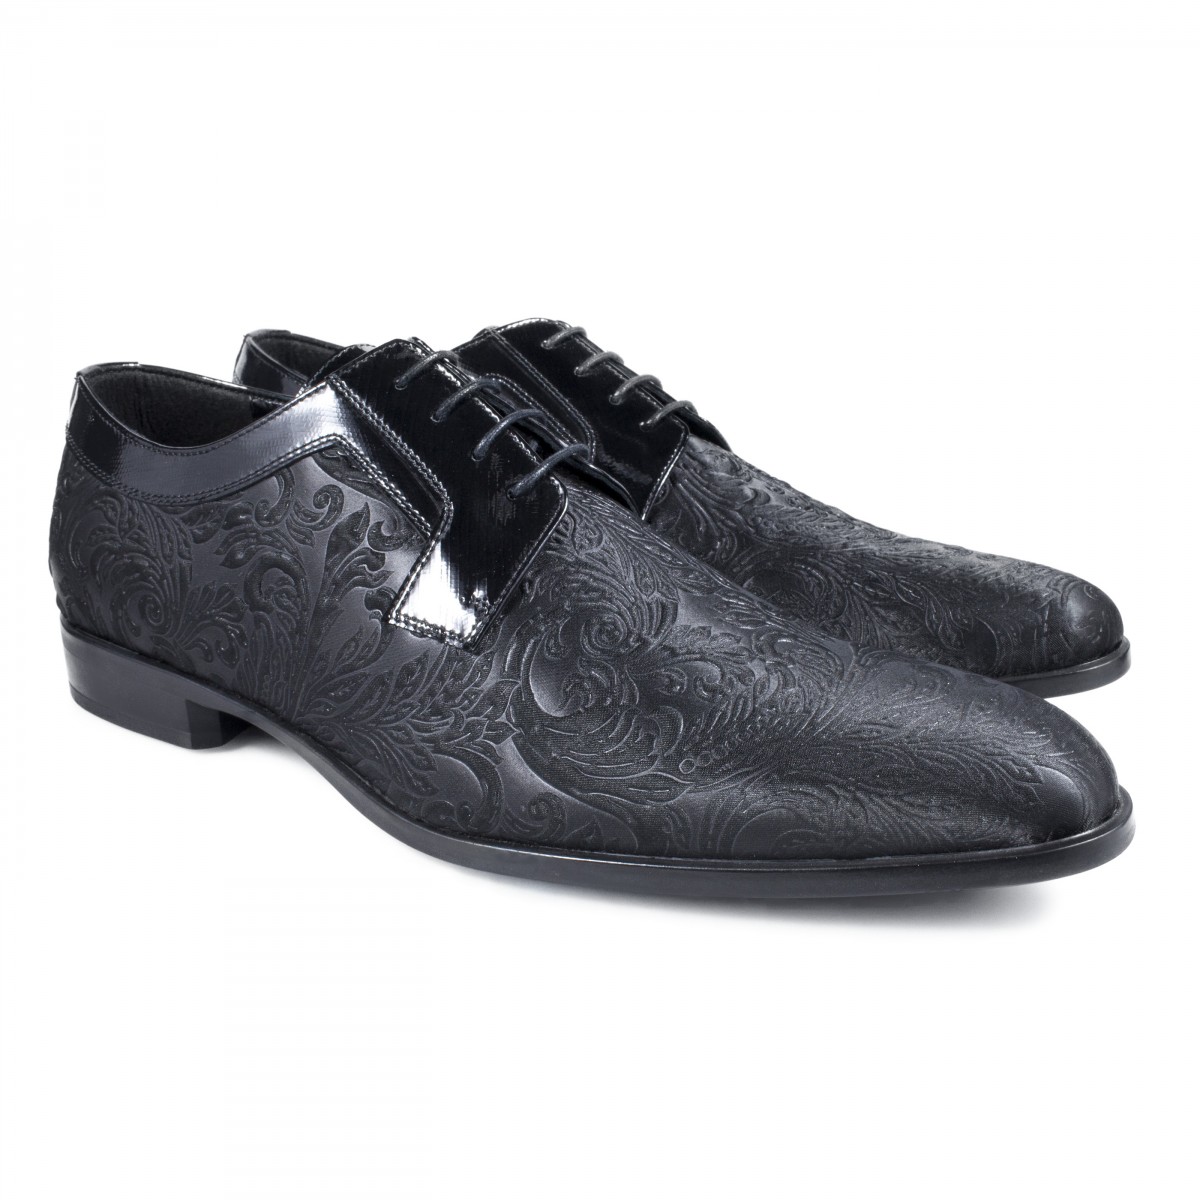 Scarpe eleganti da uomo, scarpe da cerimonia, scarpe classiche da uomo